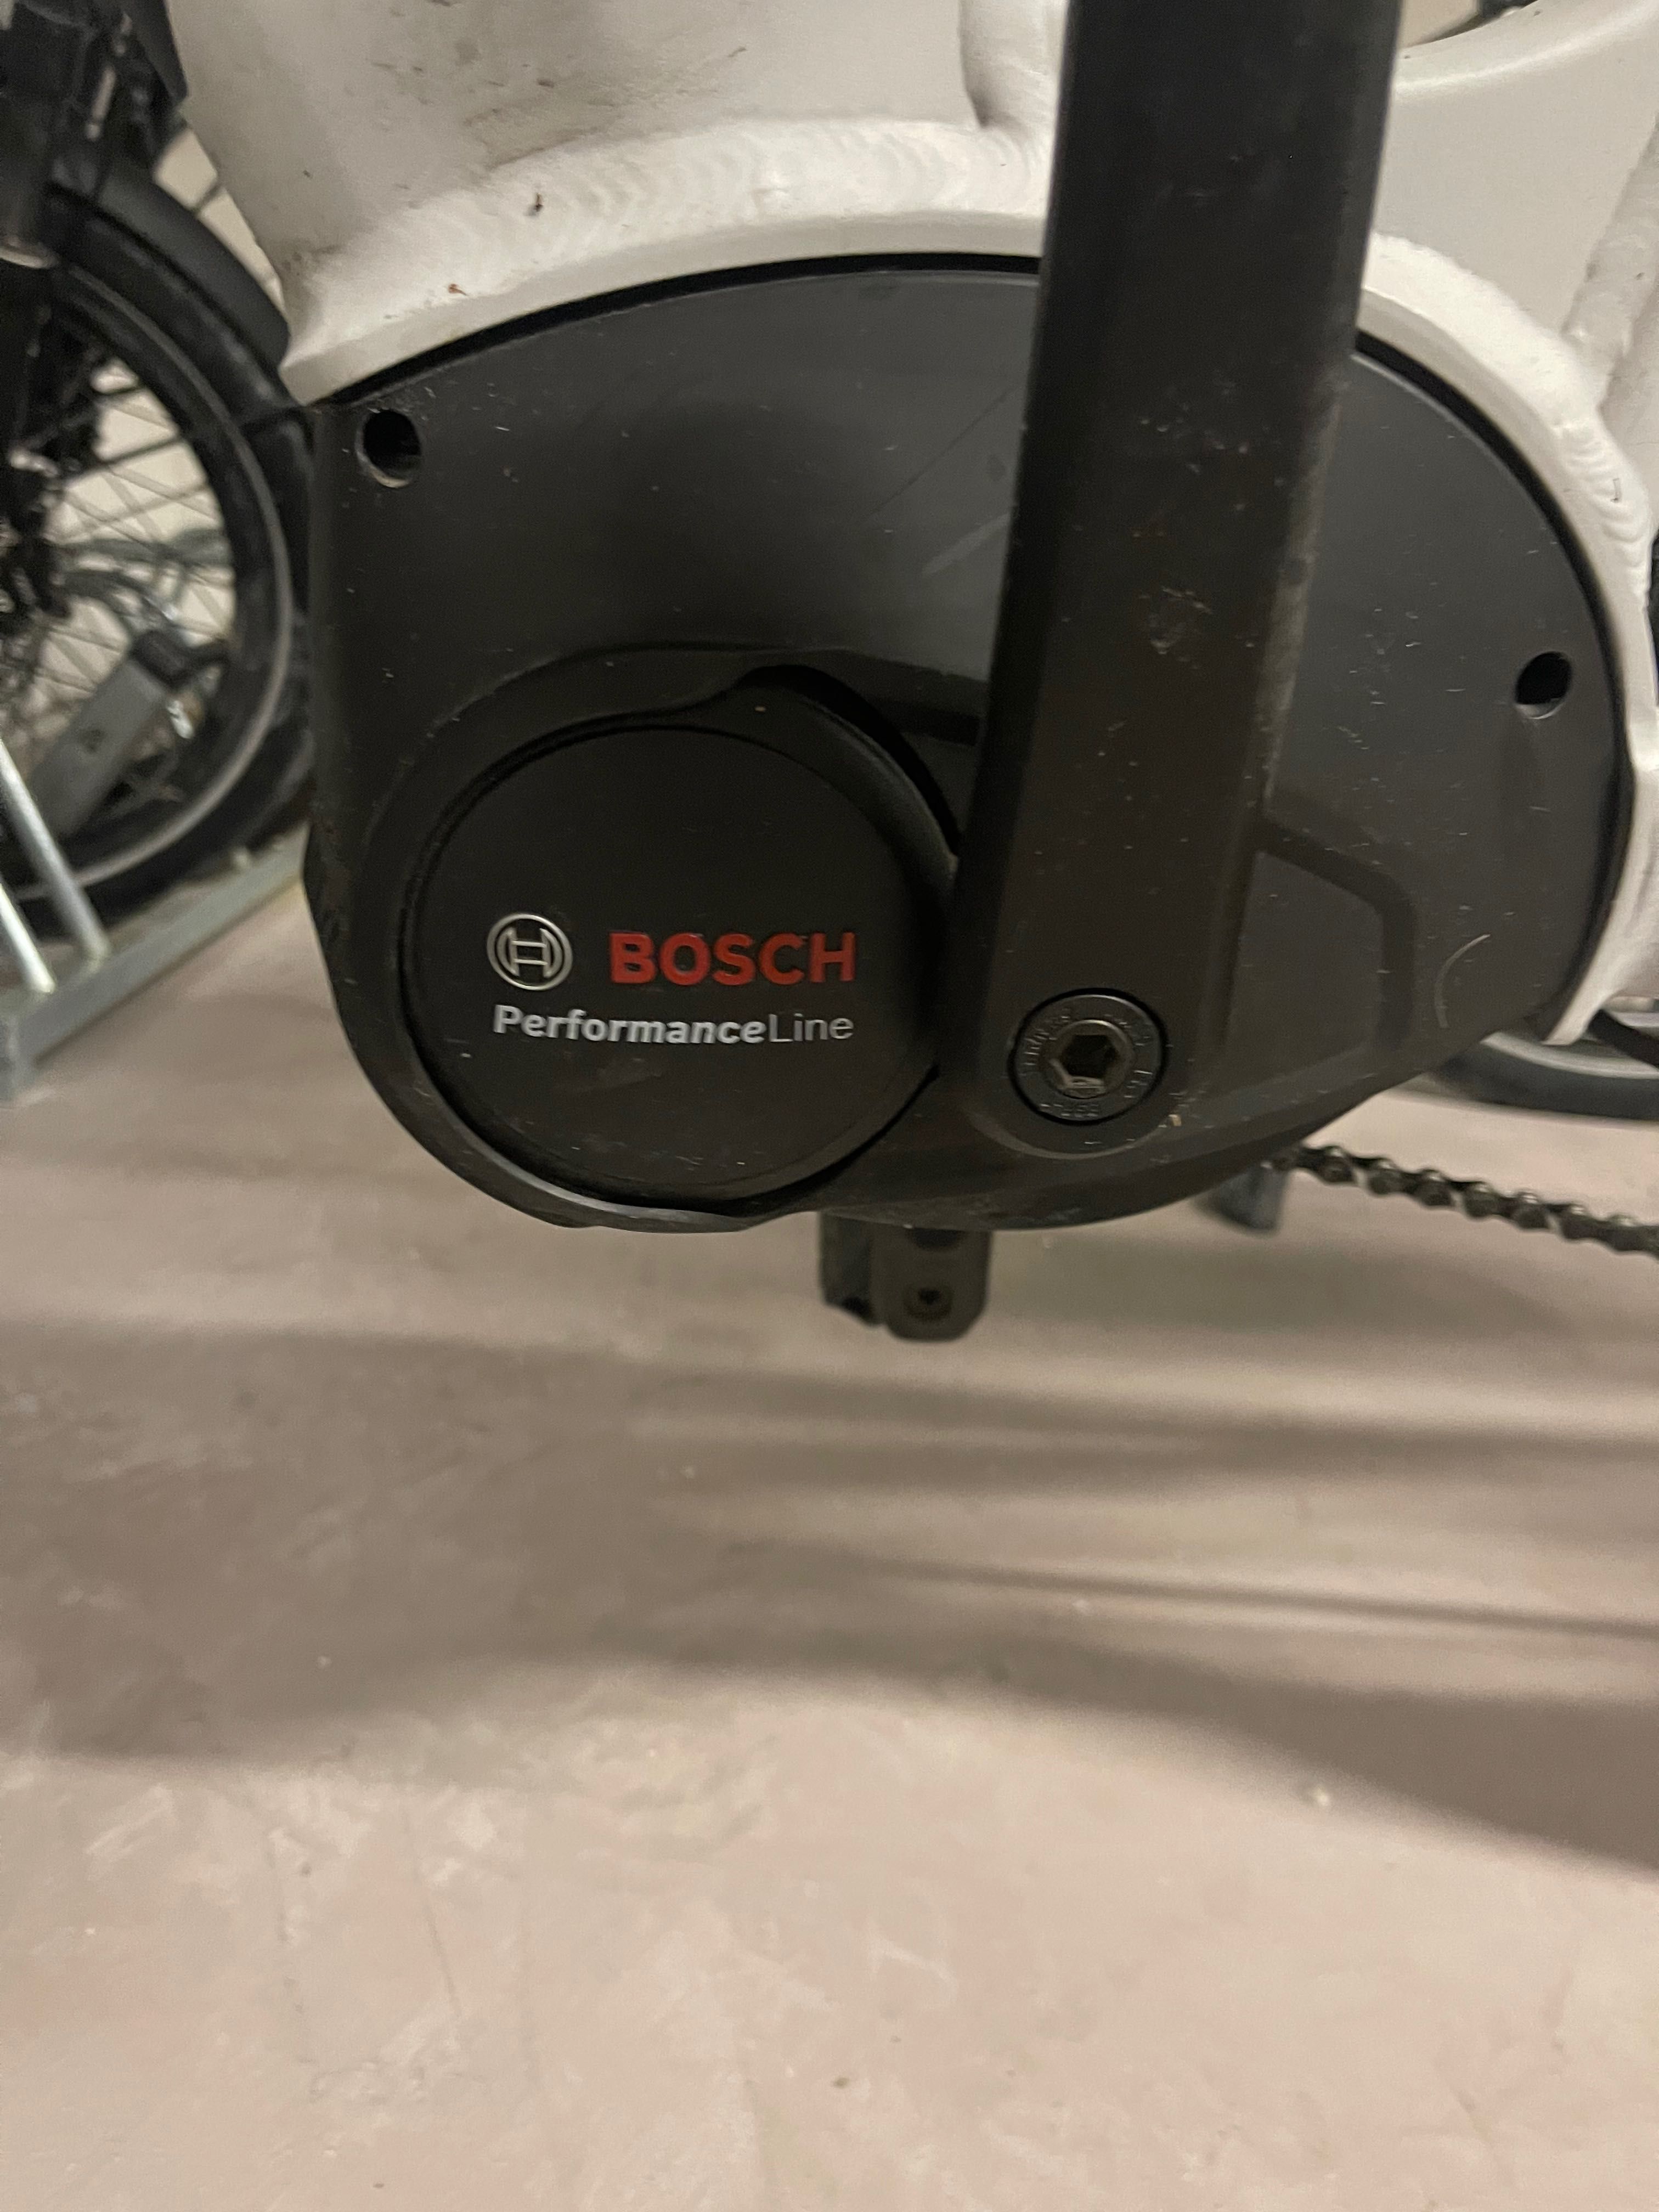 велосипед электрический kalkhoff bosh 3 поколение зарядка ключ